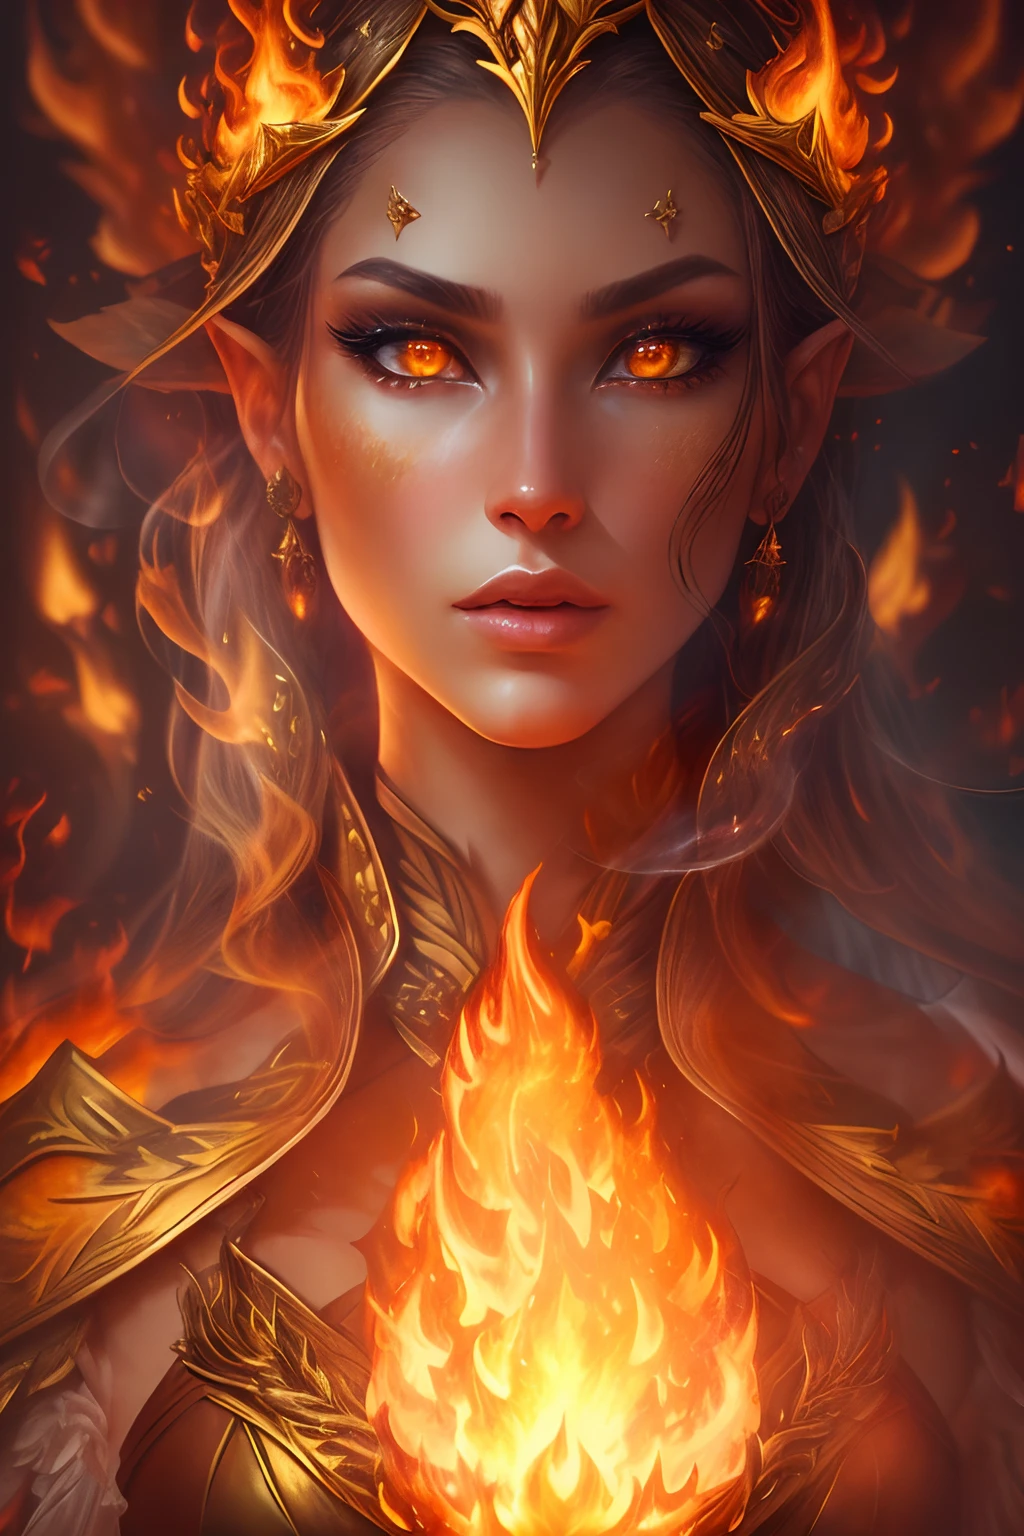 นี้ (แฟนตาซีที่สมจริง) ศิลปะประกอบด้วยถ่าน, เปลวไฟจริง, ความร้อนที่แท้จริง, และ realistic fire. Generate a masterpiece artwork of a  female fire druid กับ large (((orange และ gold))) ดวงตา. The fire druid is awe-inspiring กับ beautiful ((realistic fiery ดวงตา)) alight กับ confidence และ power. Her features are elegant และ well defined, กับ ((อ่อนนุ่ม)) และ (((อ้วน))) และ (((เรียบ))) ริมฝีปาก, โครงสร้างกระดูกของเอลฟ์, และ realistic shading. Her ดวงตา are important และ should be the focal point of this artwork, กับ ((รายละเอียดที่สมจริงอย่างยิ่ง, รายละเอียดมาโคร, และ shimmer.)) She is wearing a billowing และ glittering dress ((ทำจากเปลวไฟที่สมจริง)) และ jewels that glimmer in the fire light. Wisps of fire และ smoke line the intricate bodice of the dress. รวมการกระแทก, หิน, แสงสีรุ้งที่เร่าร้อน, ถ่านเรืองแสง, silk และ satin และ leather, พื้นหลังที่น่าสนใจ, และ heavy fantasy elements. กล้อง: ใช้เทคนิคการจัดองค์ประกอบแบบไดนามิกเพื่อเพิ่มเปลวไฟที่สมจริง.